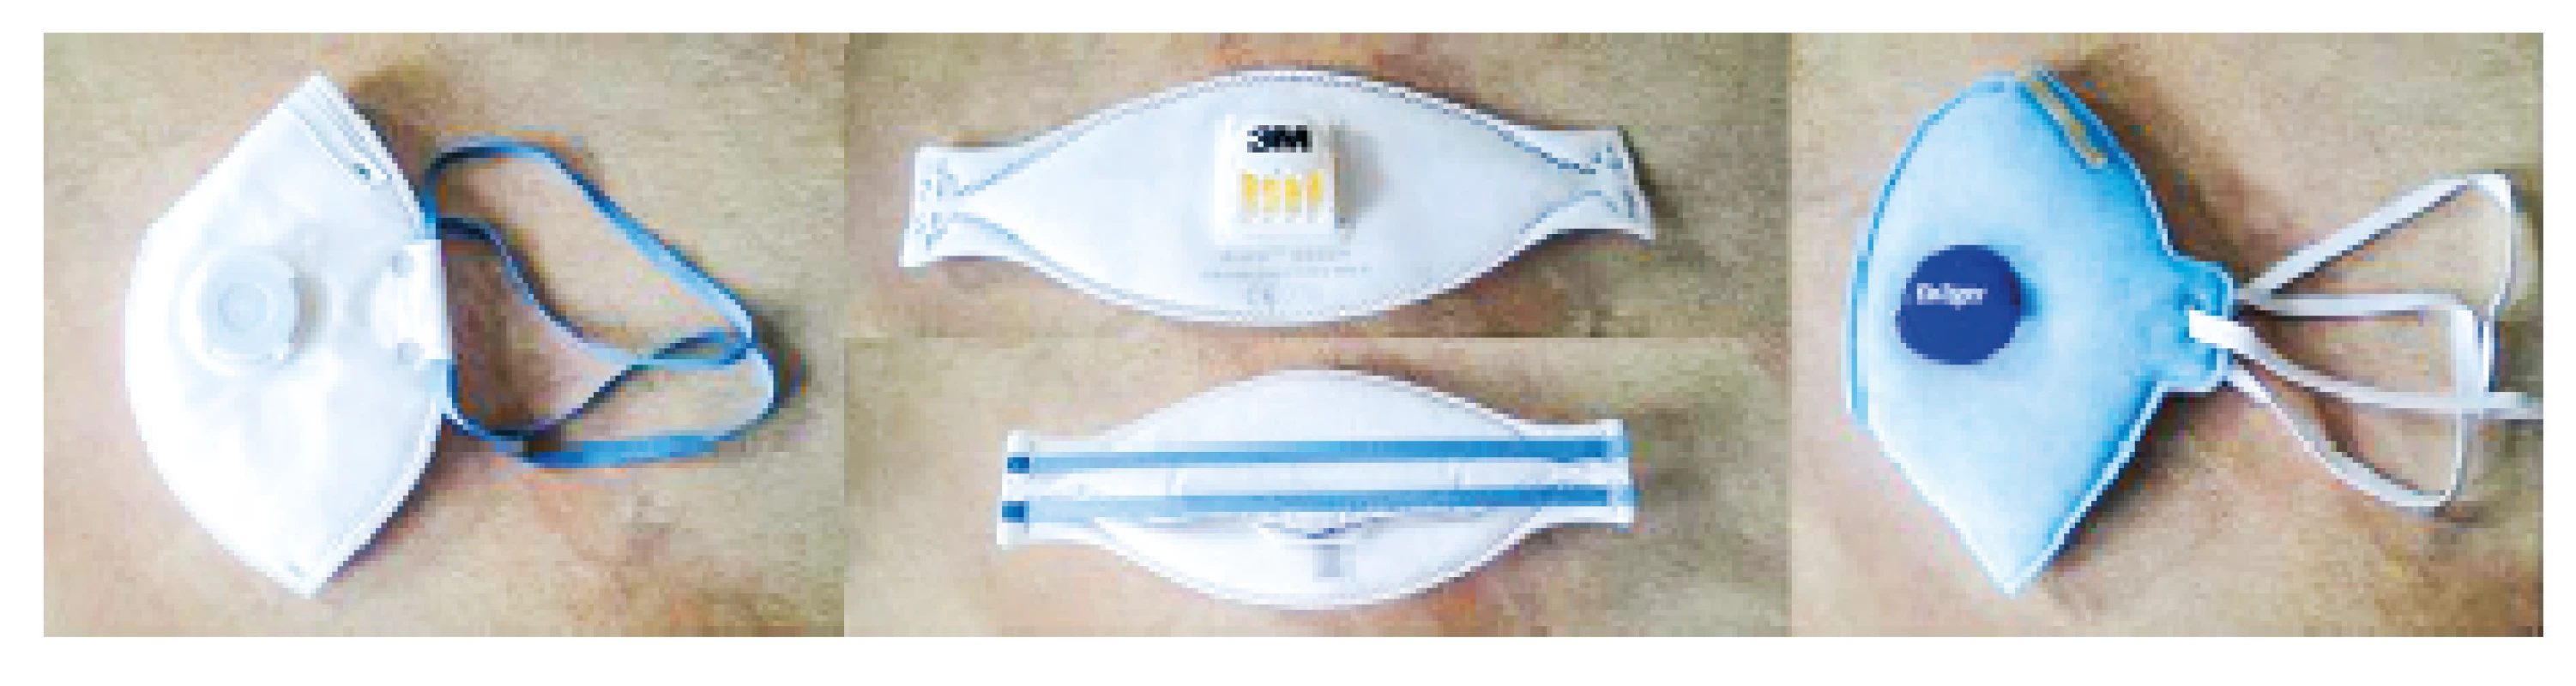 Testované respirátory: Respirátor SPIRO P2, 3M Aura - P2,
Dräger X-plore 1720+V [9]